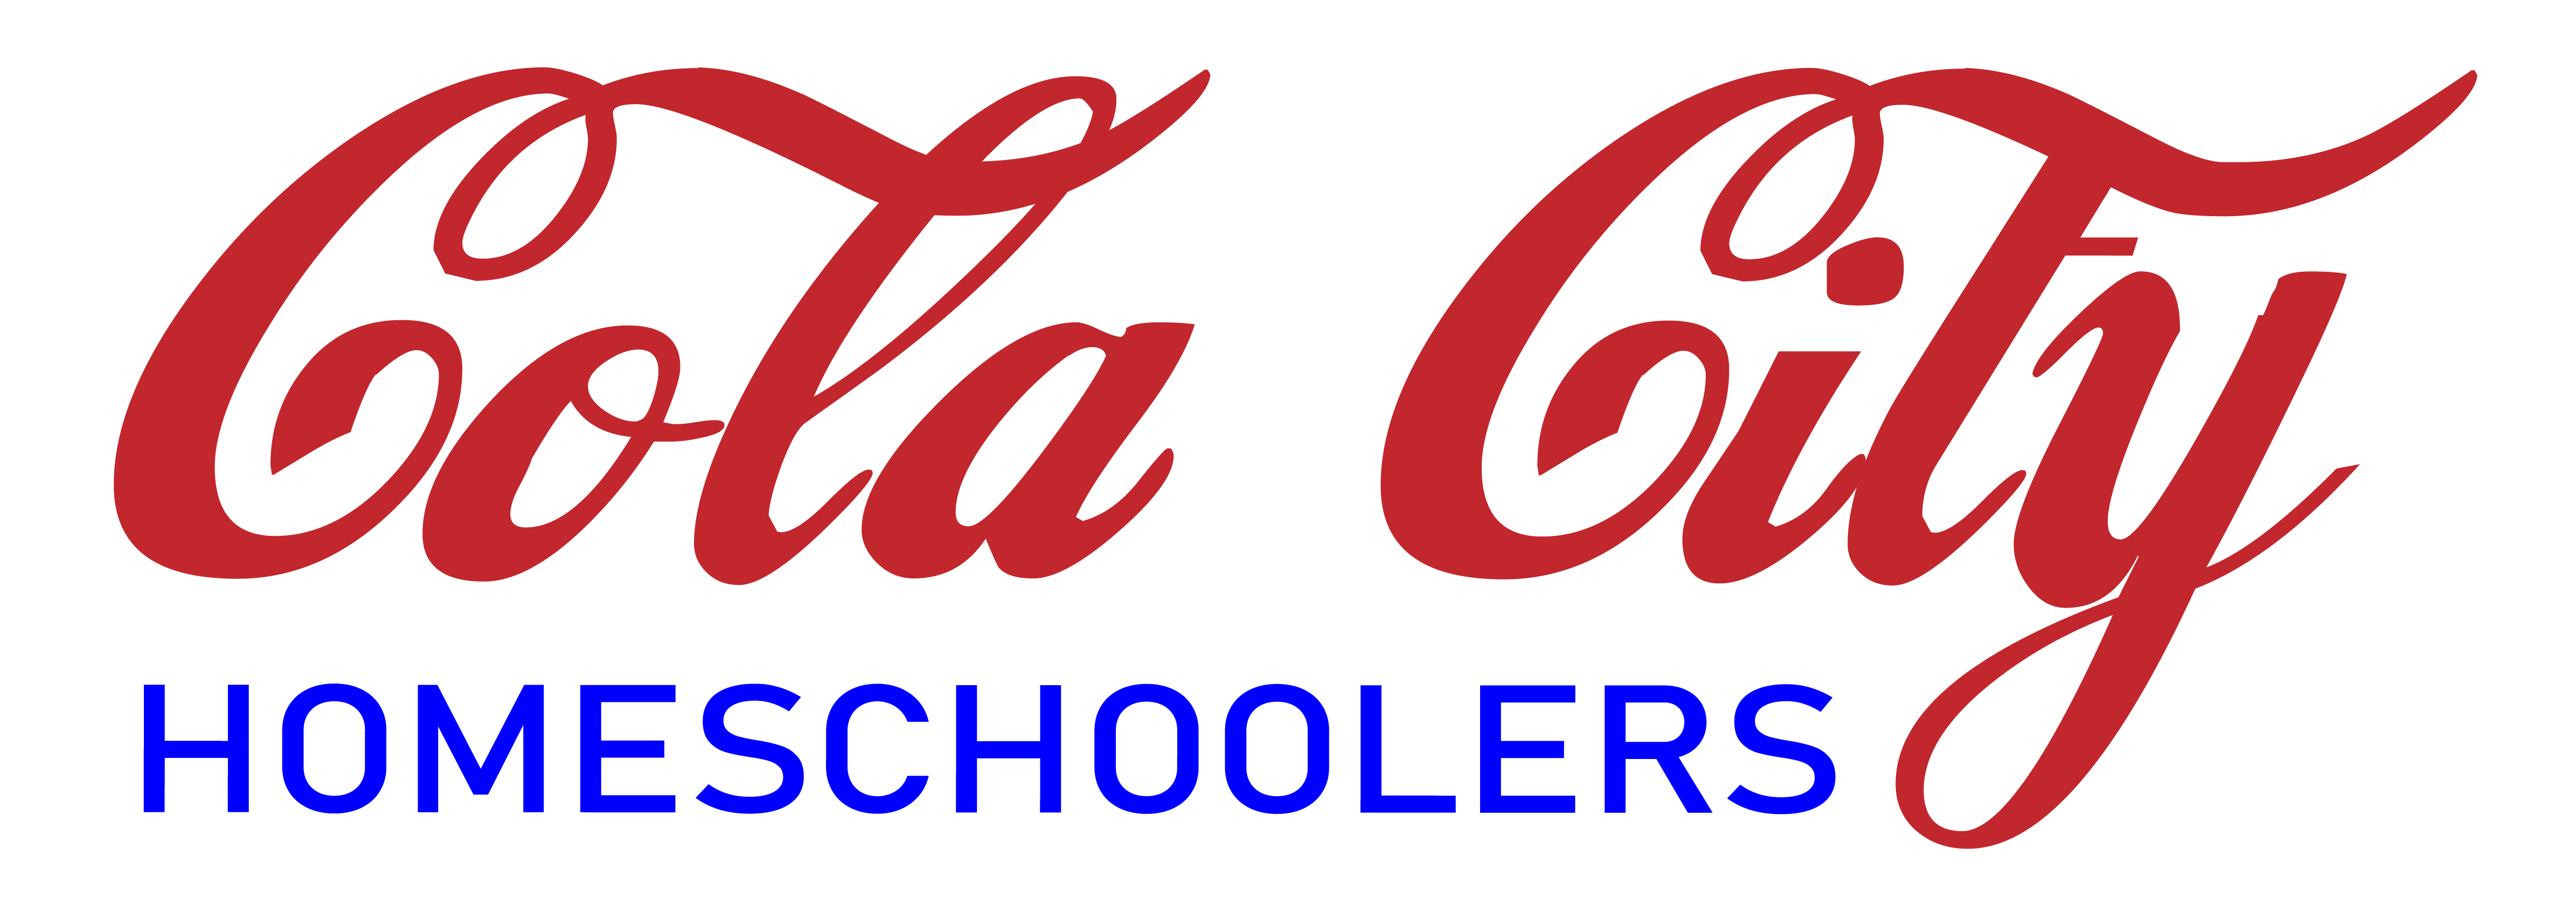 Cola City Homeschoolers